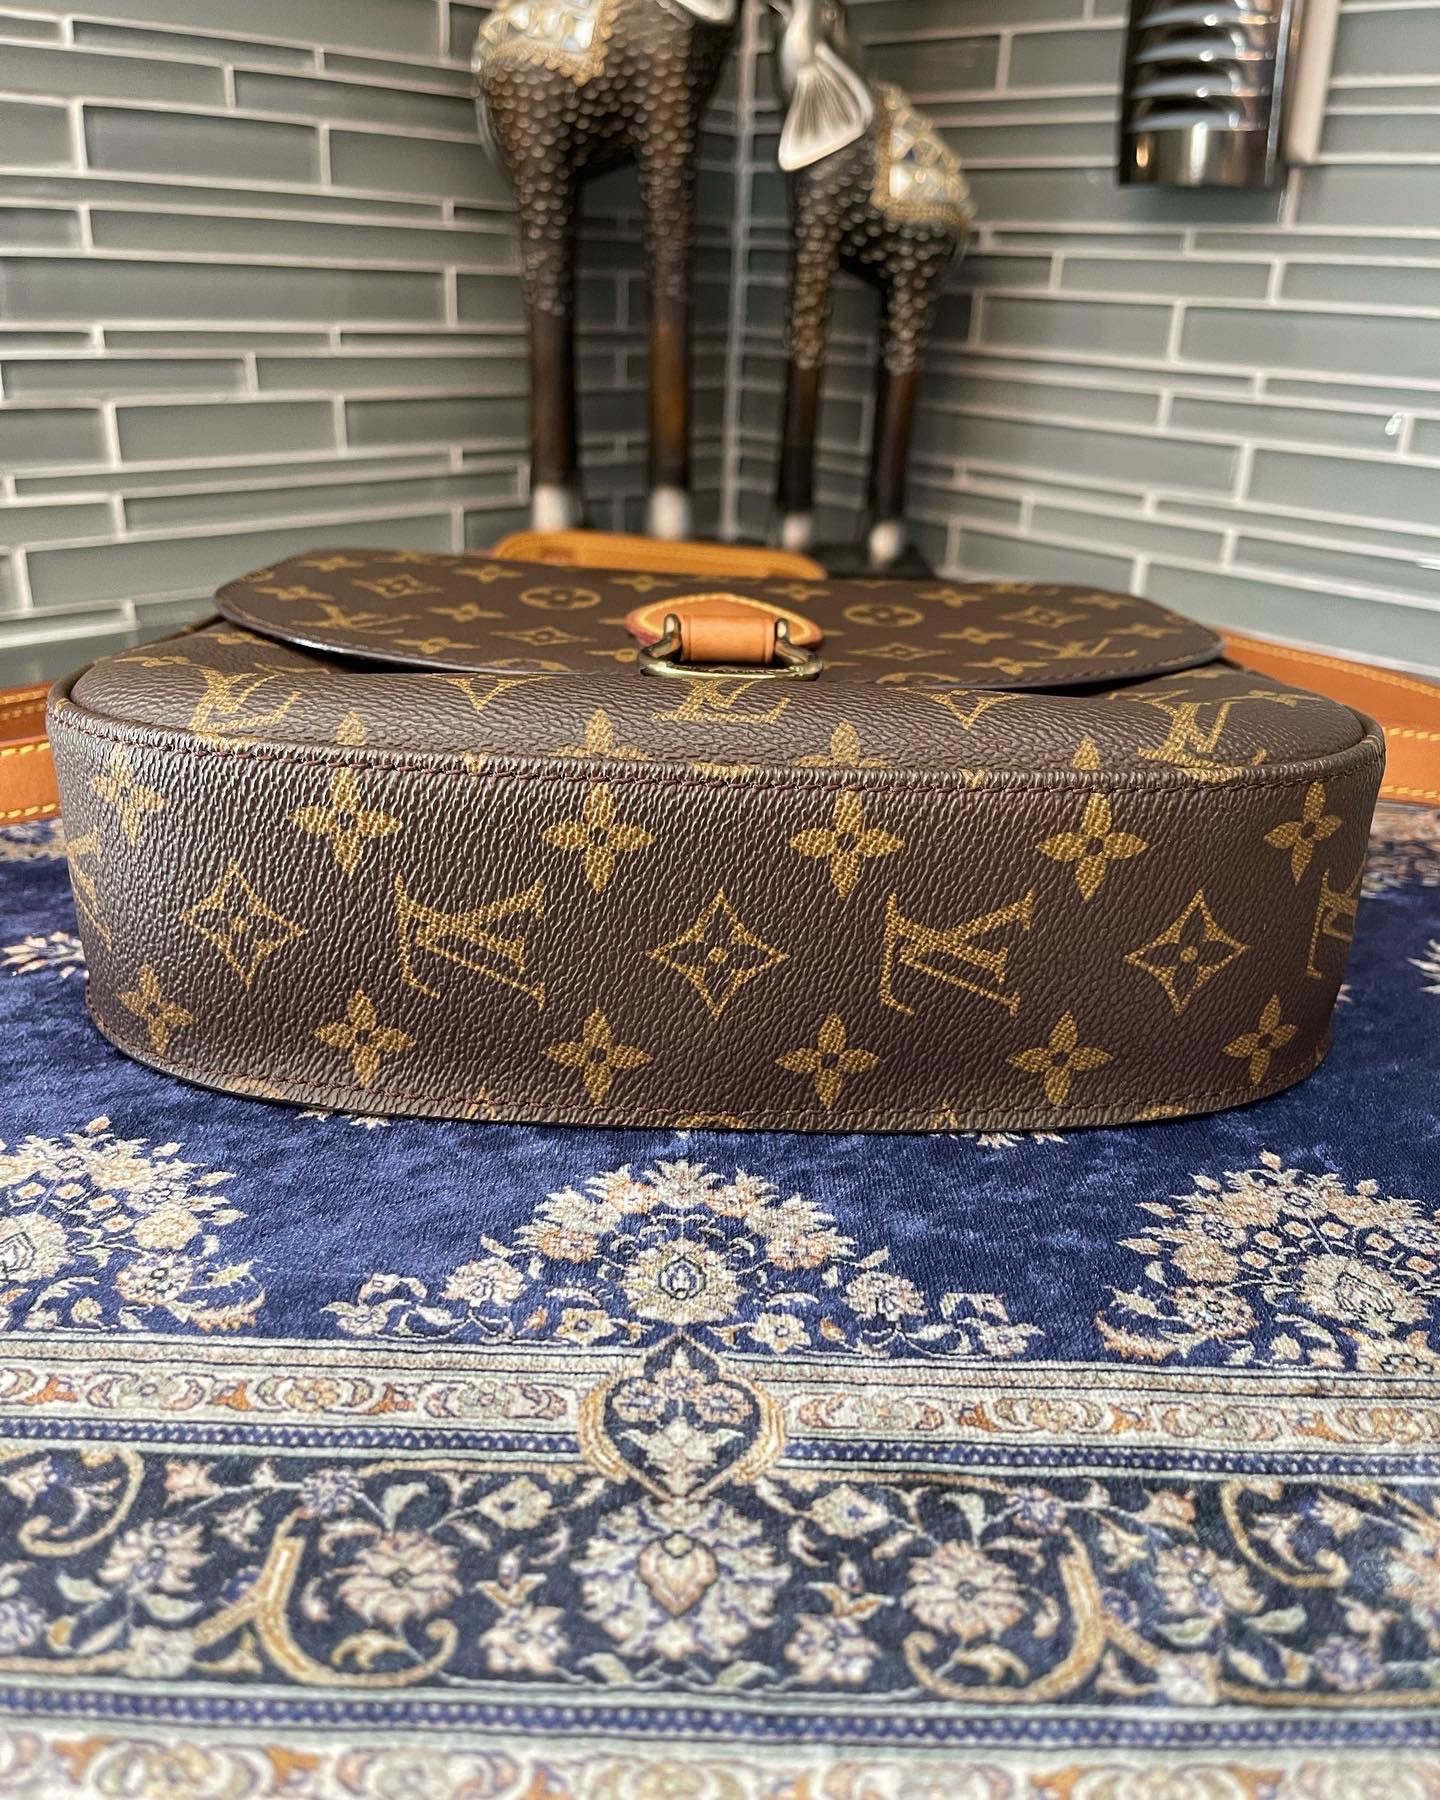 Authentic Louis Vuitton Saint Cloud MM M51243 Monogram Shoulder Bag 10688  for Sale in Plano, TX - OfferUp